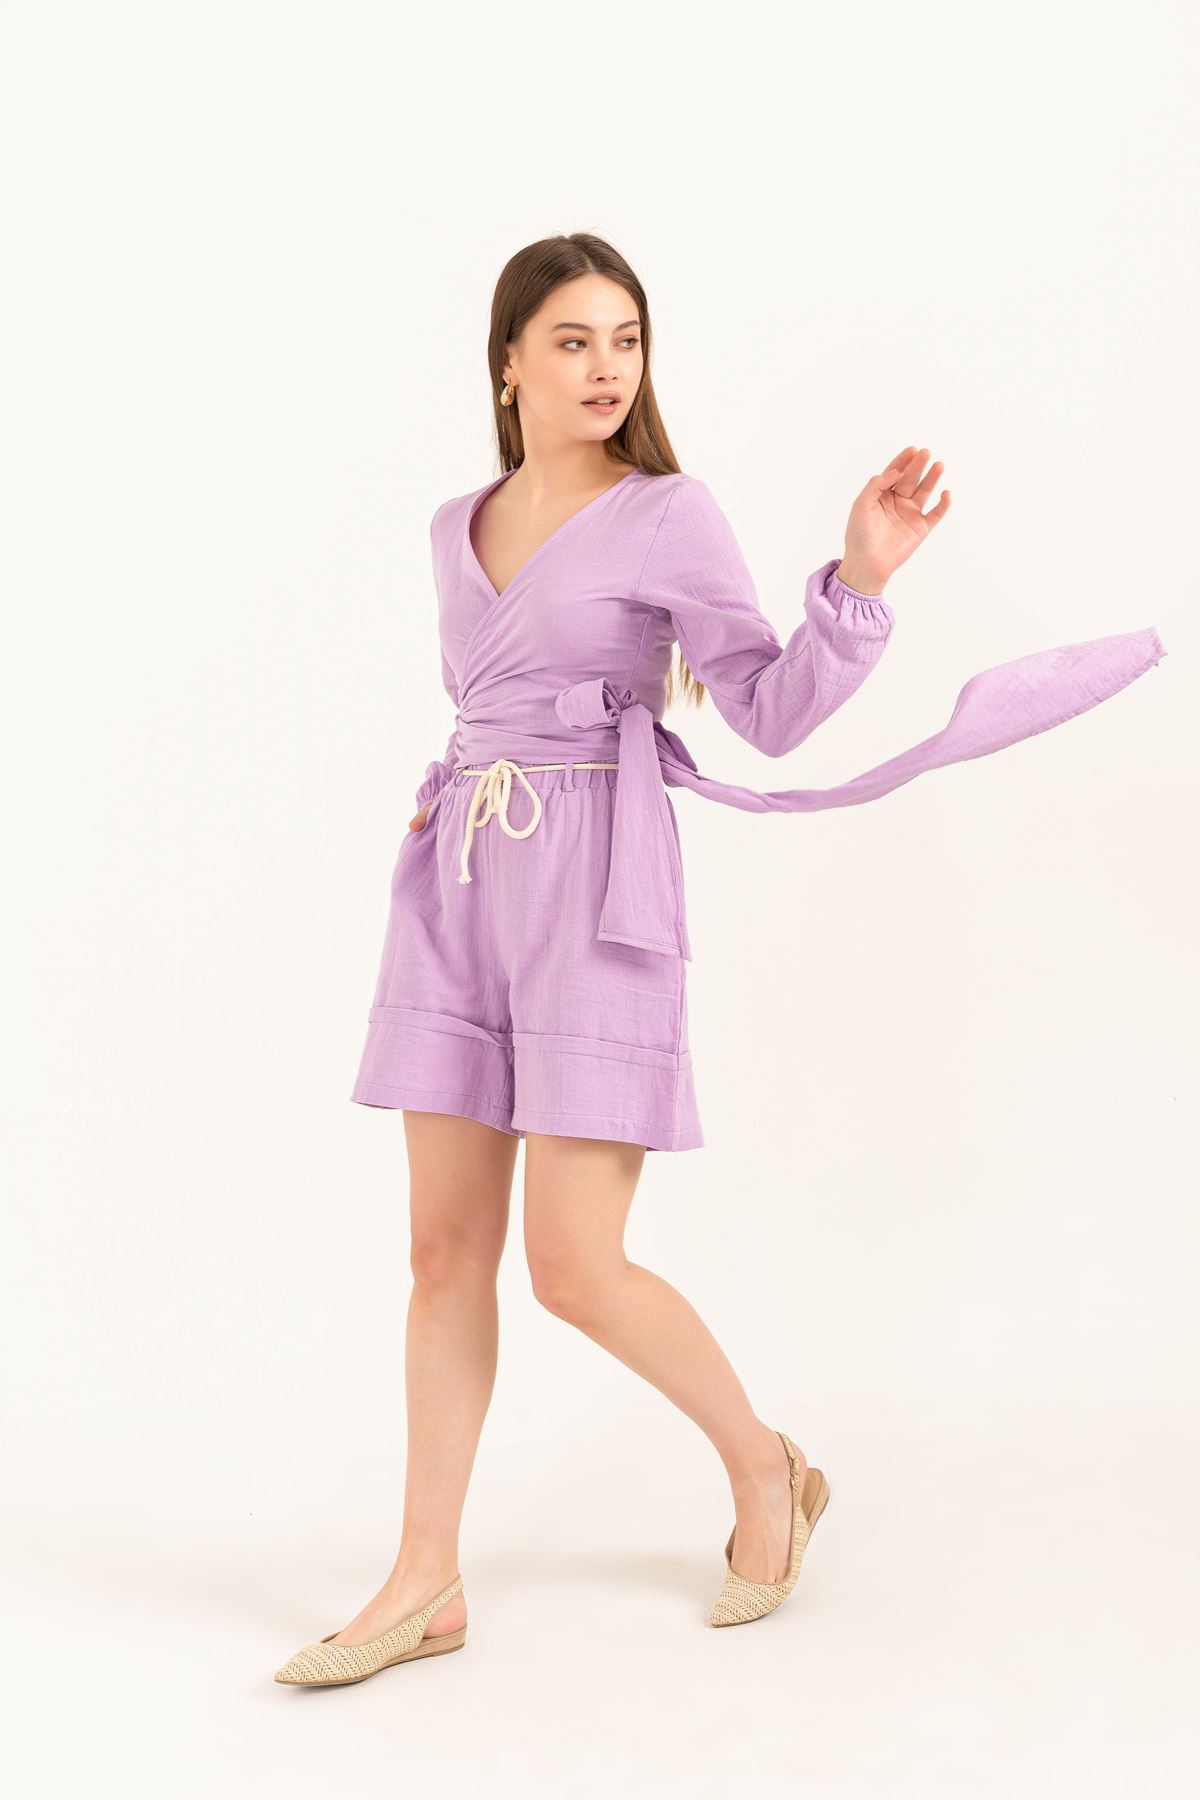 Muslin Fabric Short Comfy Women Shorts - Lilac